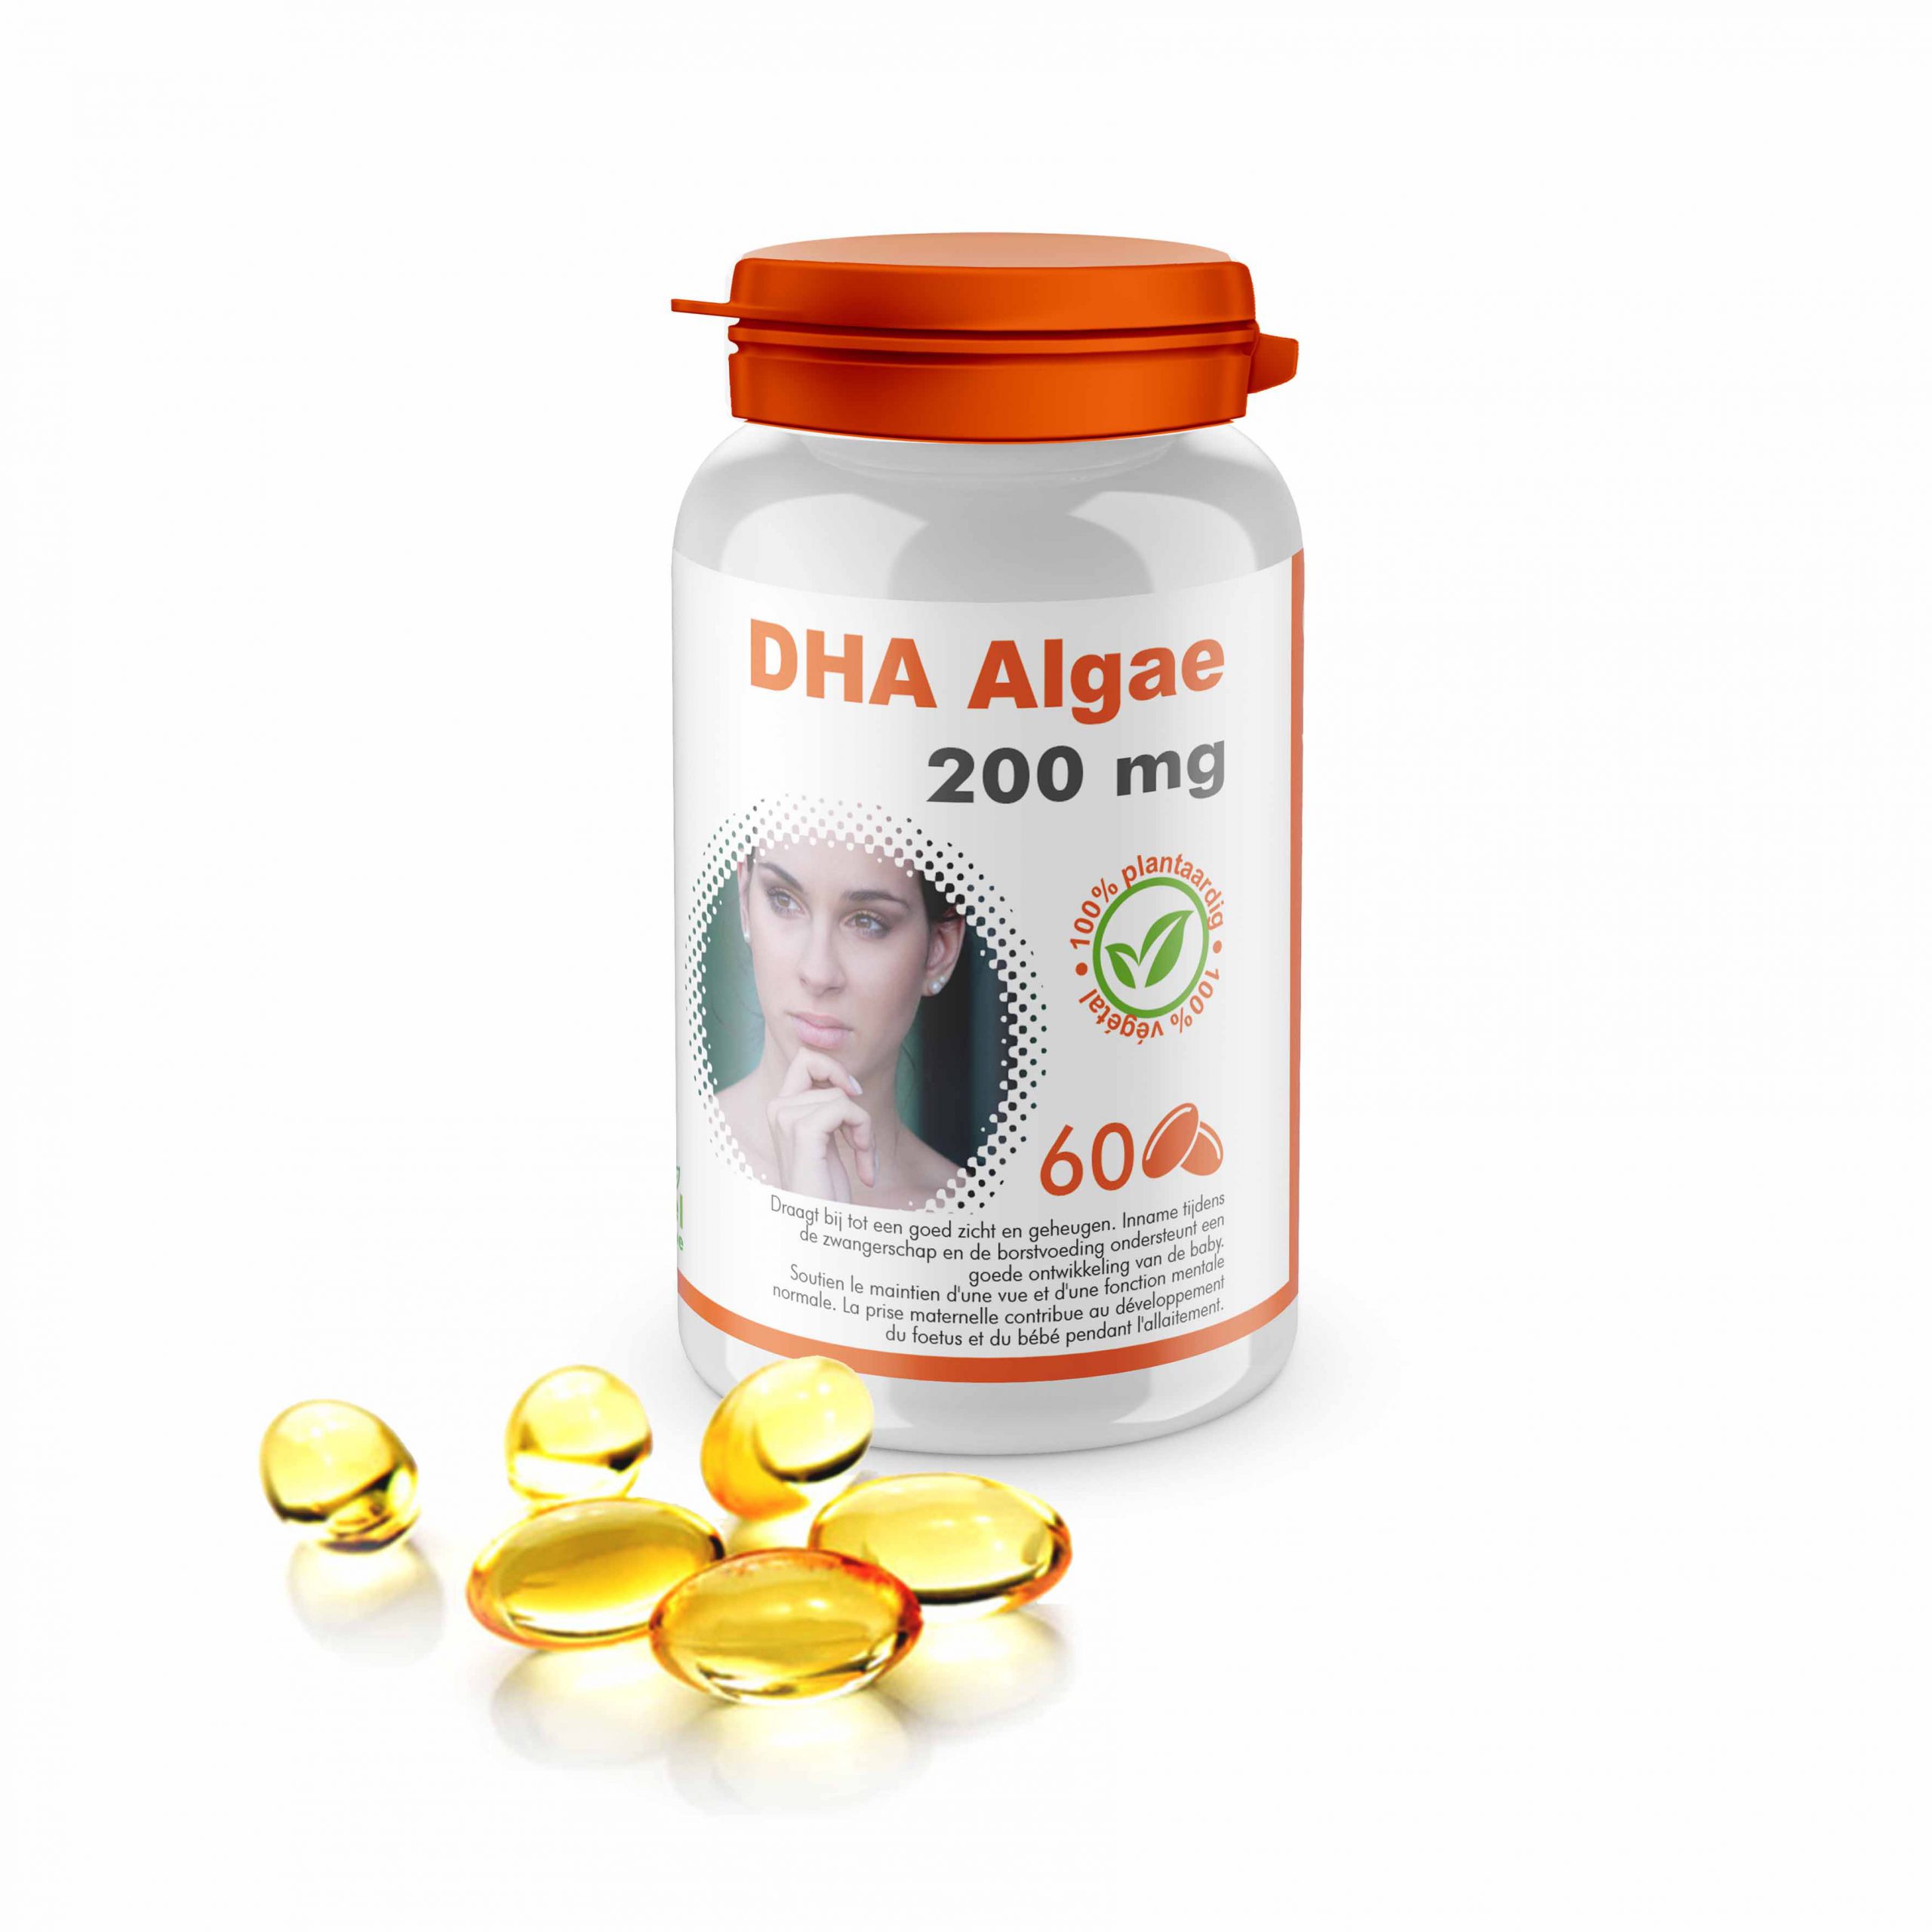 DHA Algae